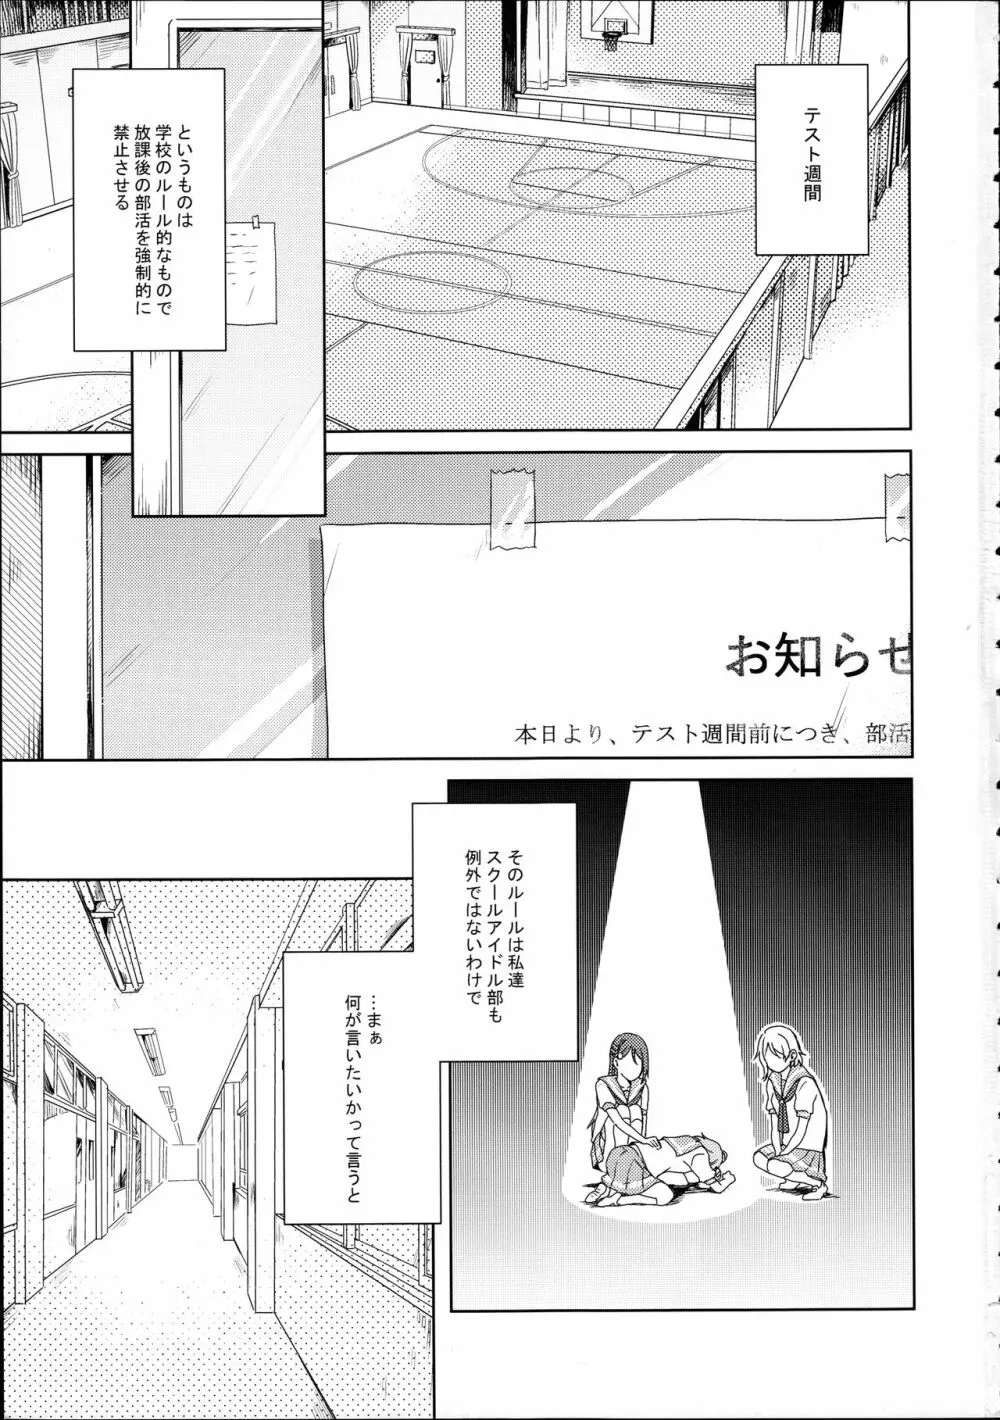 梨子ちゃん依存症 - page3